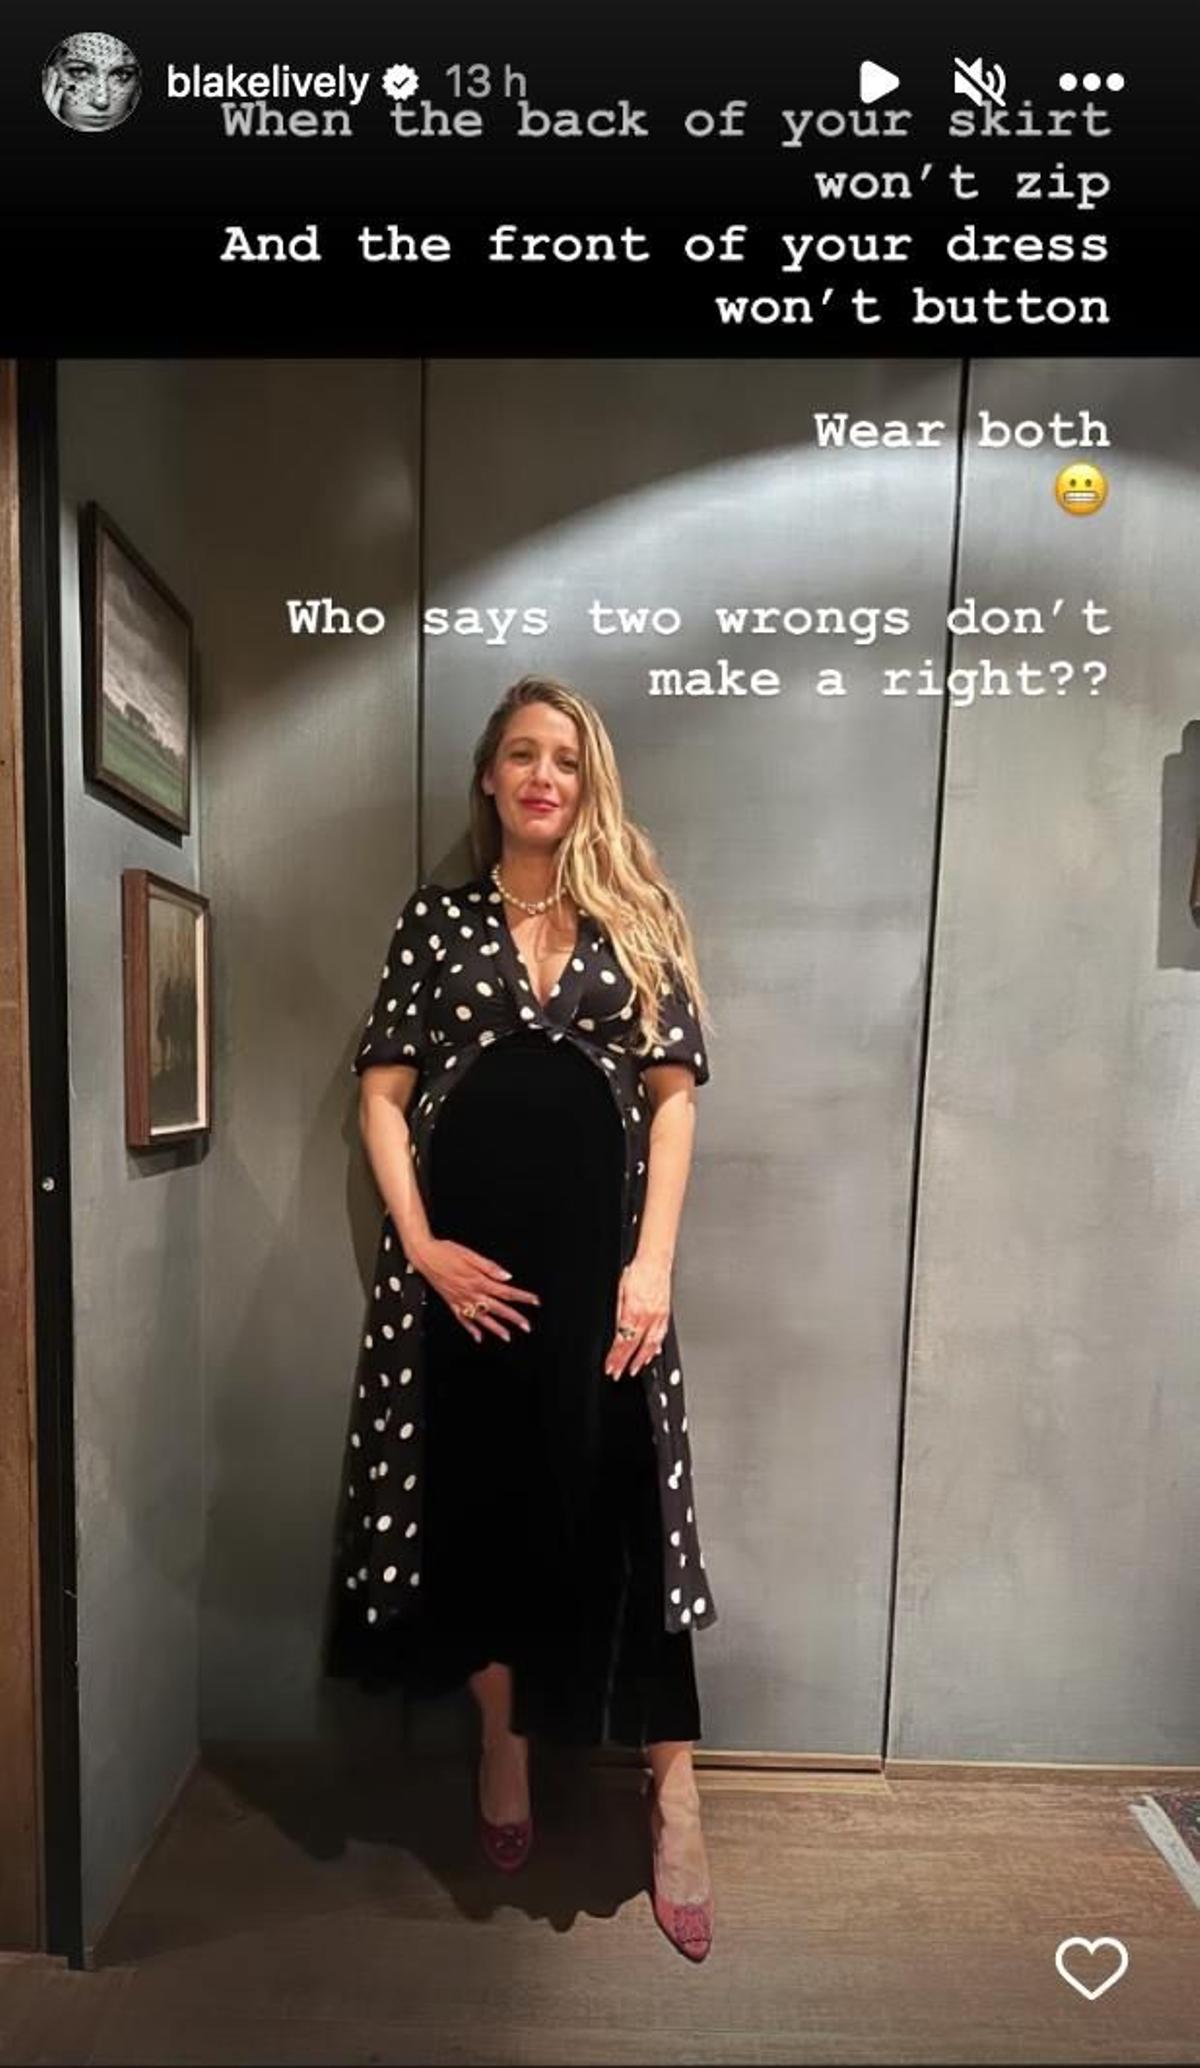 Blake Lively, embarazada con look compuesto por vestido y falda